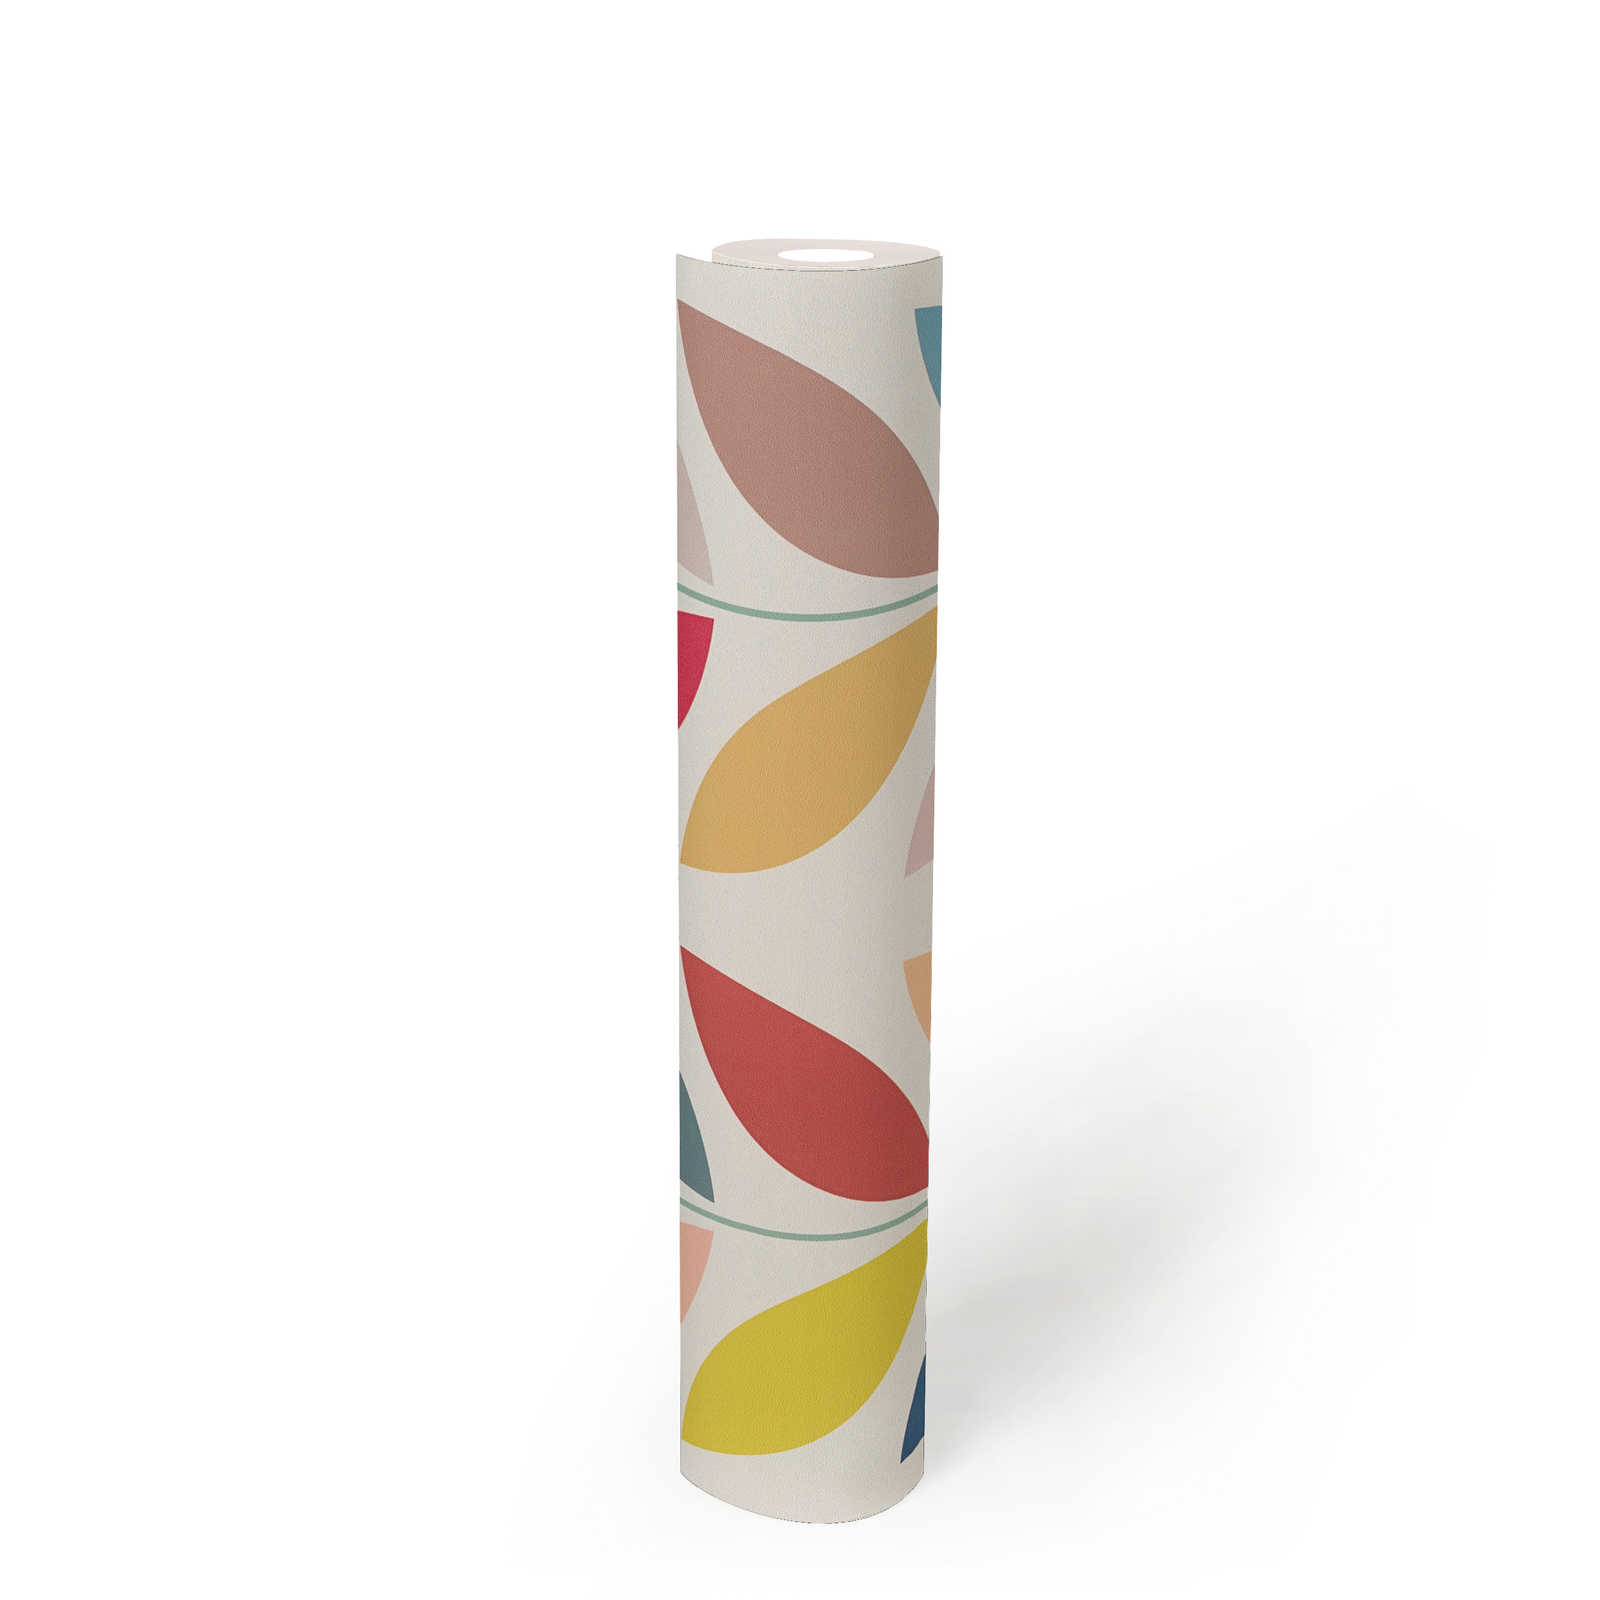             Papier peint intissé rétro avec motifs de feuilles colorées frappantes - crème, multicolore
        